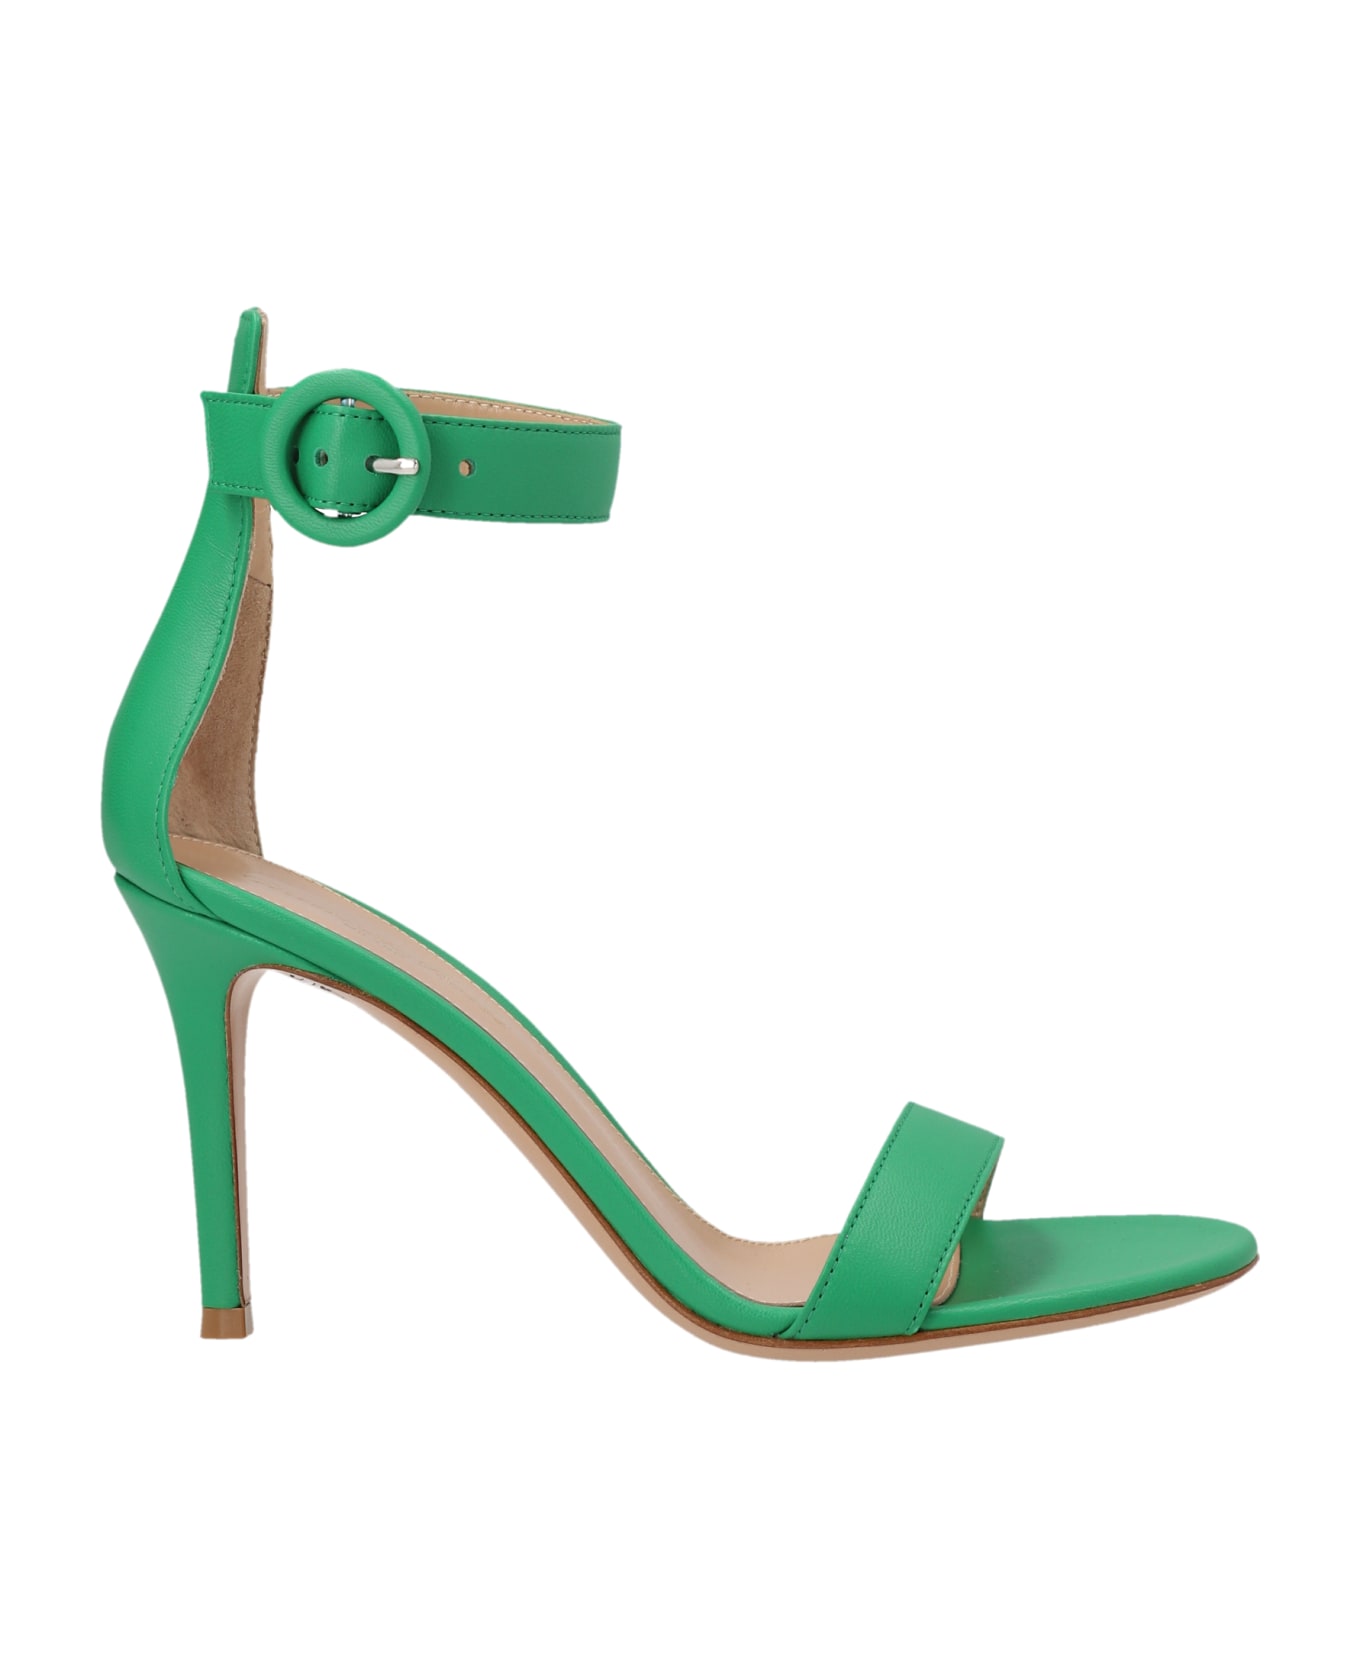 Gianvito Rossi 'portofino' Sandals - Green サンダル